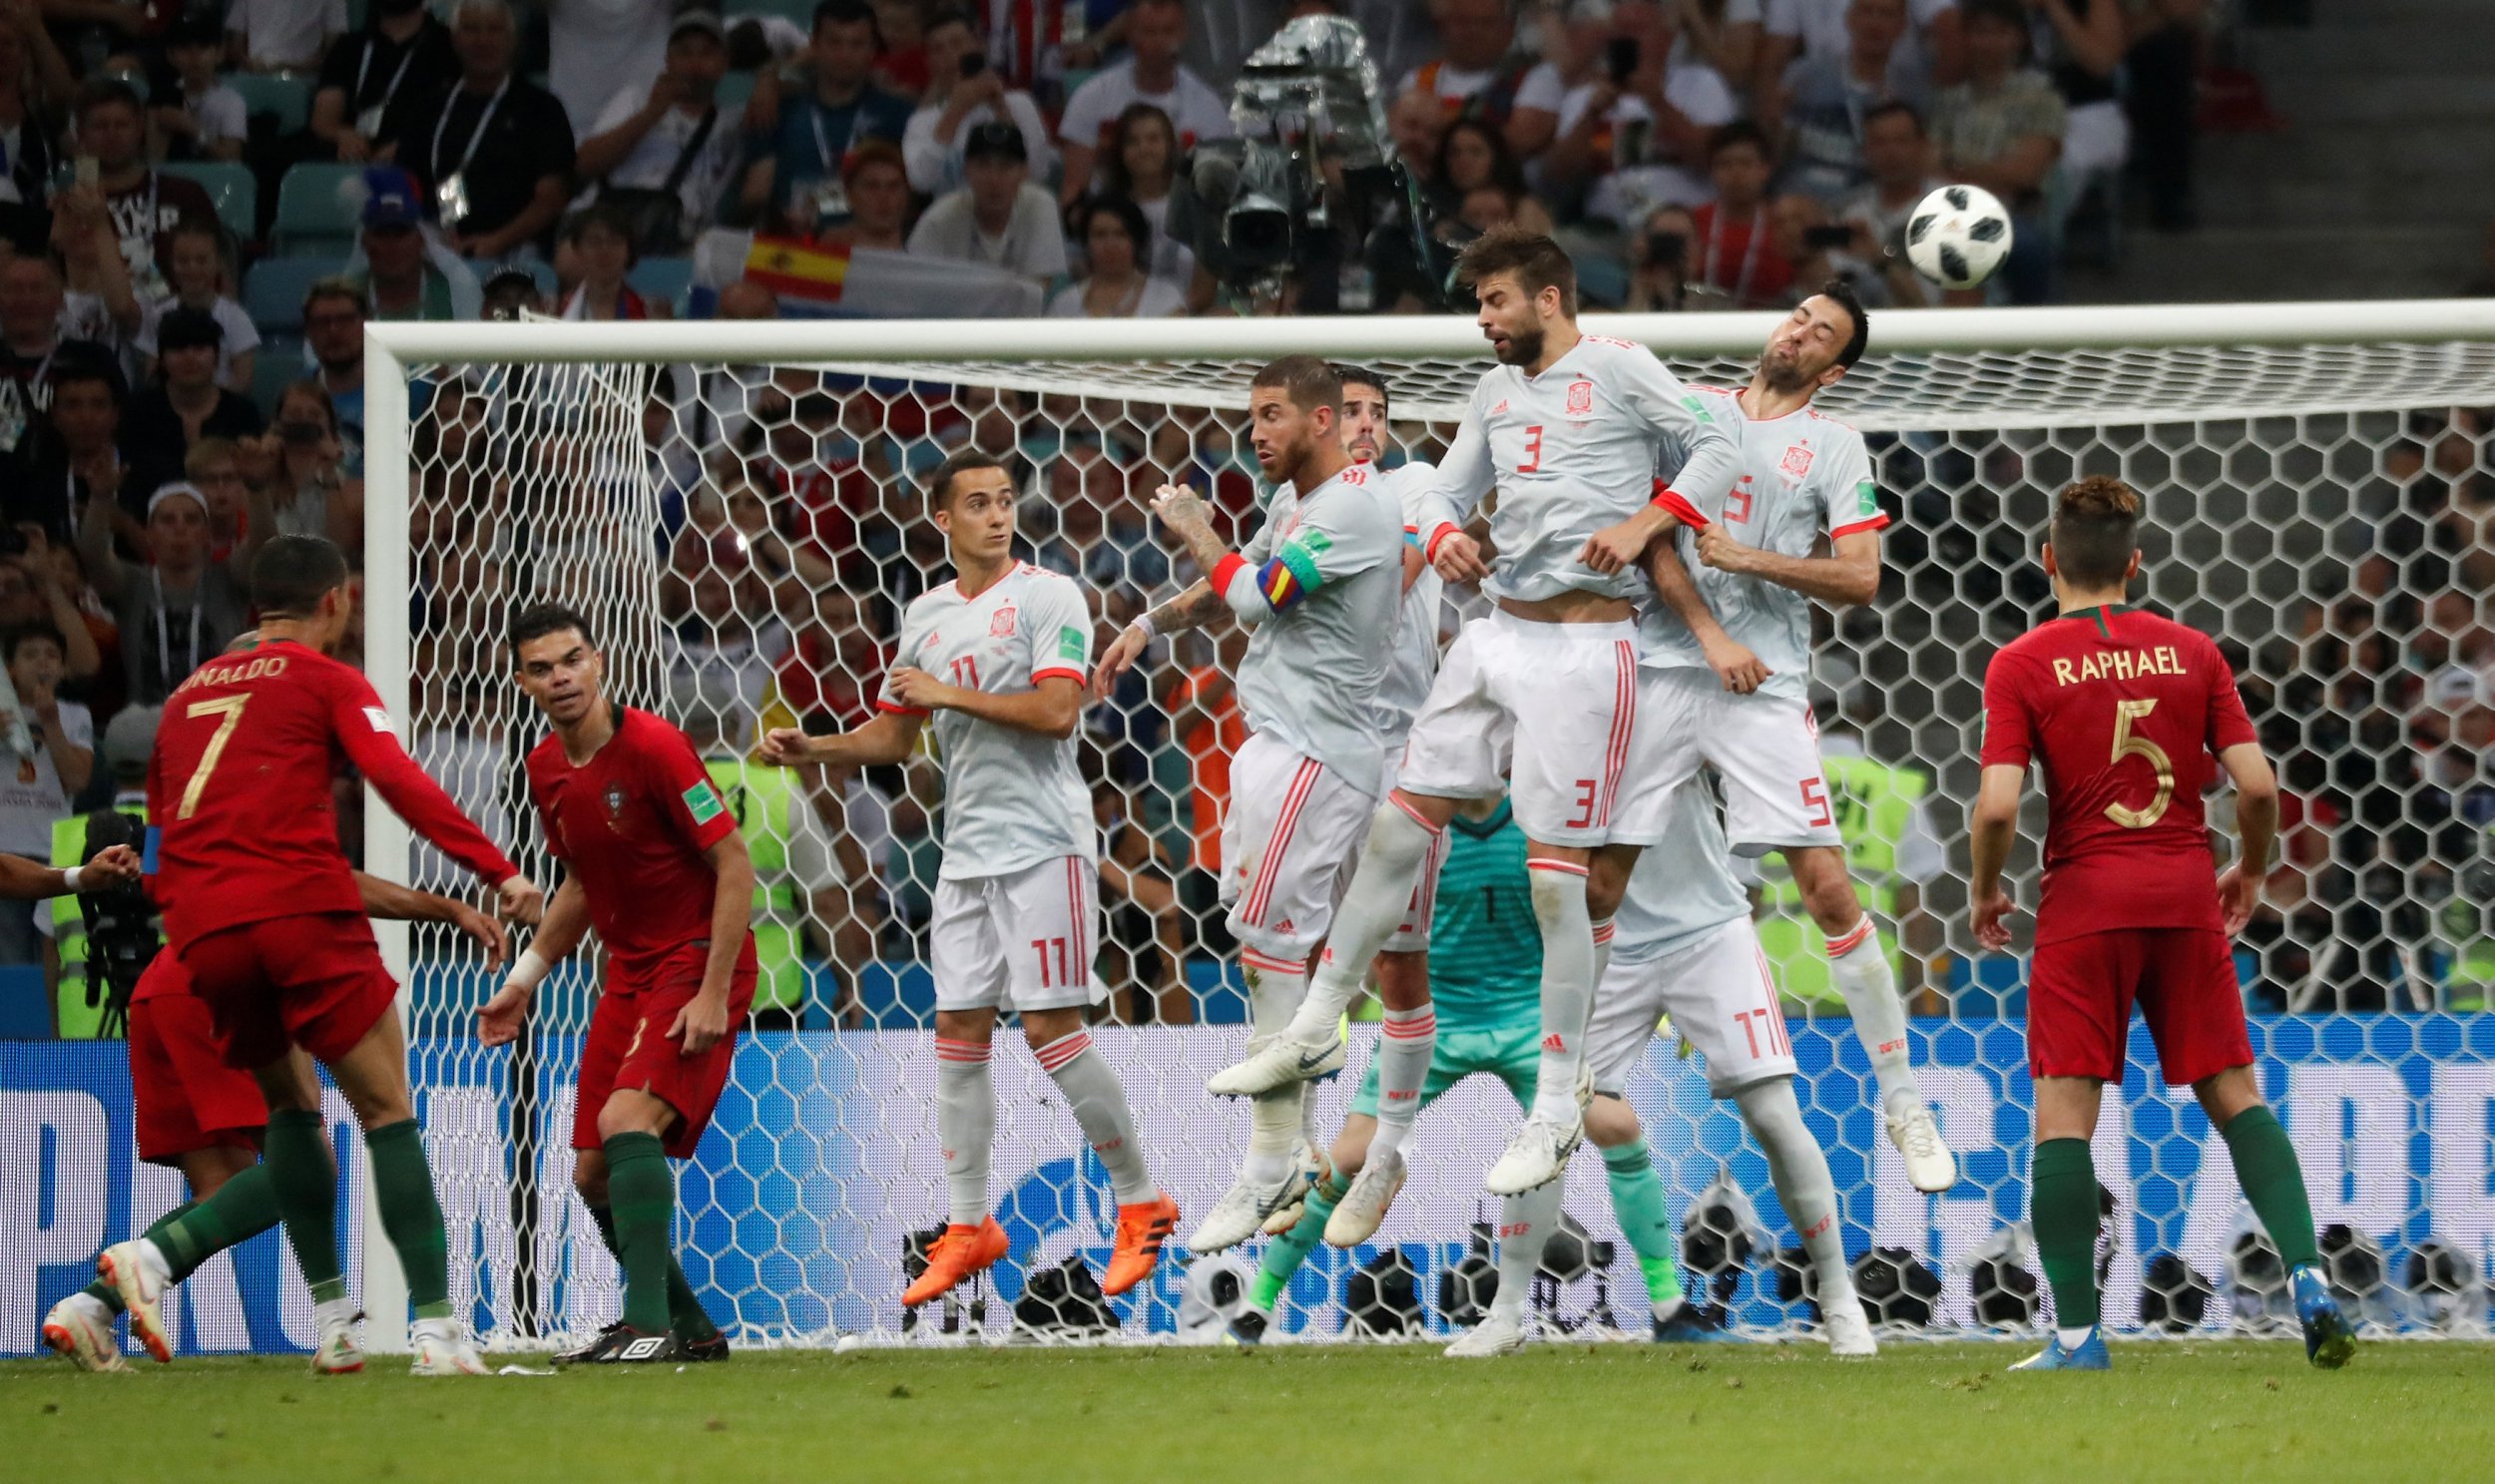 Сборная Испании начала свое выступление на чемпионате мира по футболу, сыграв вничью с Португалией